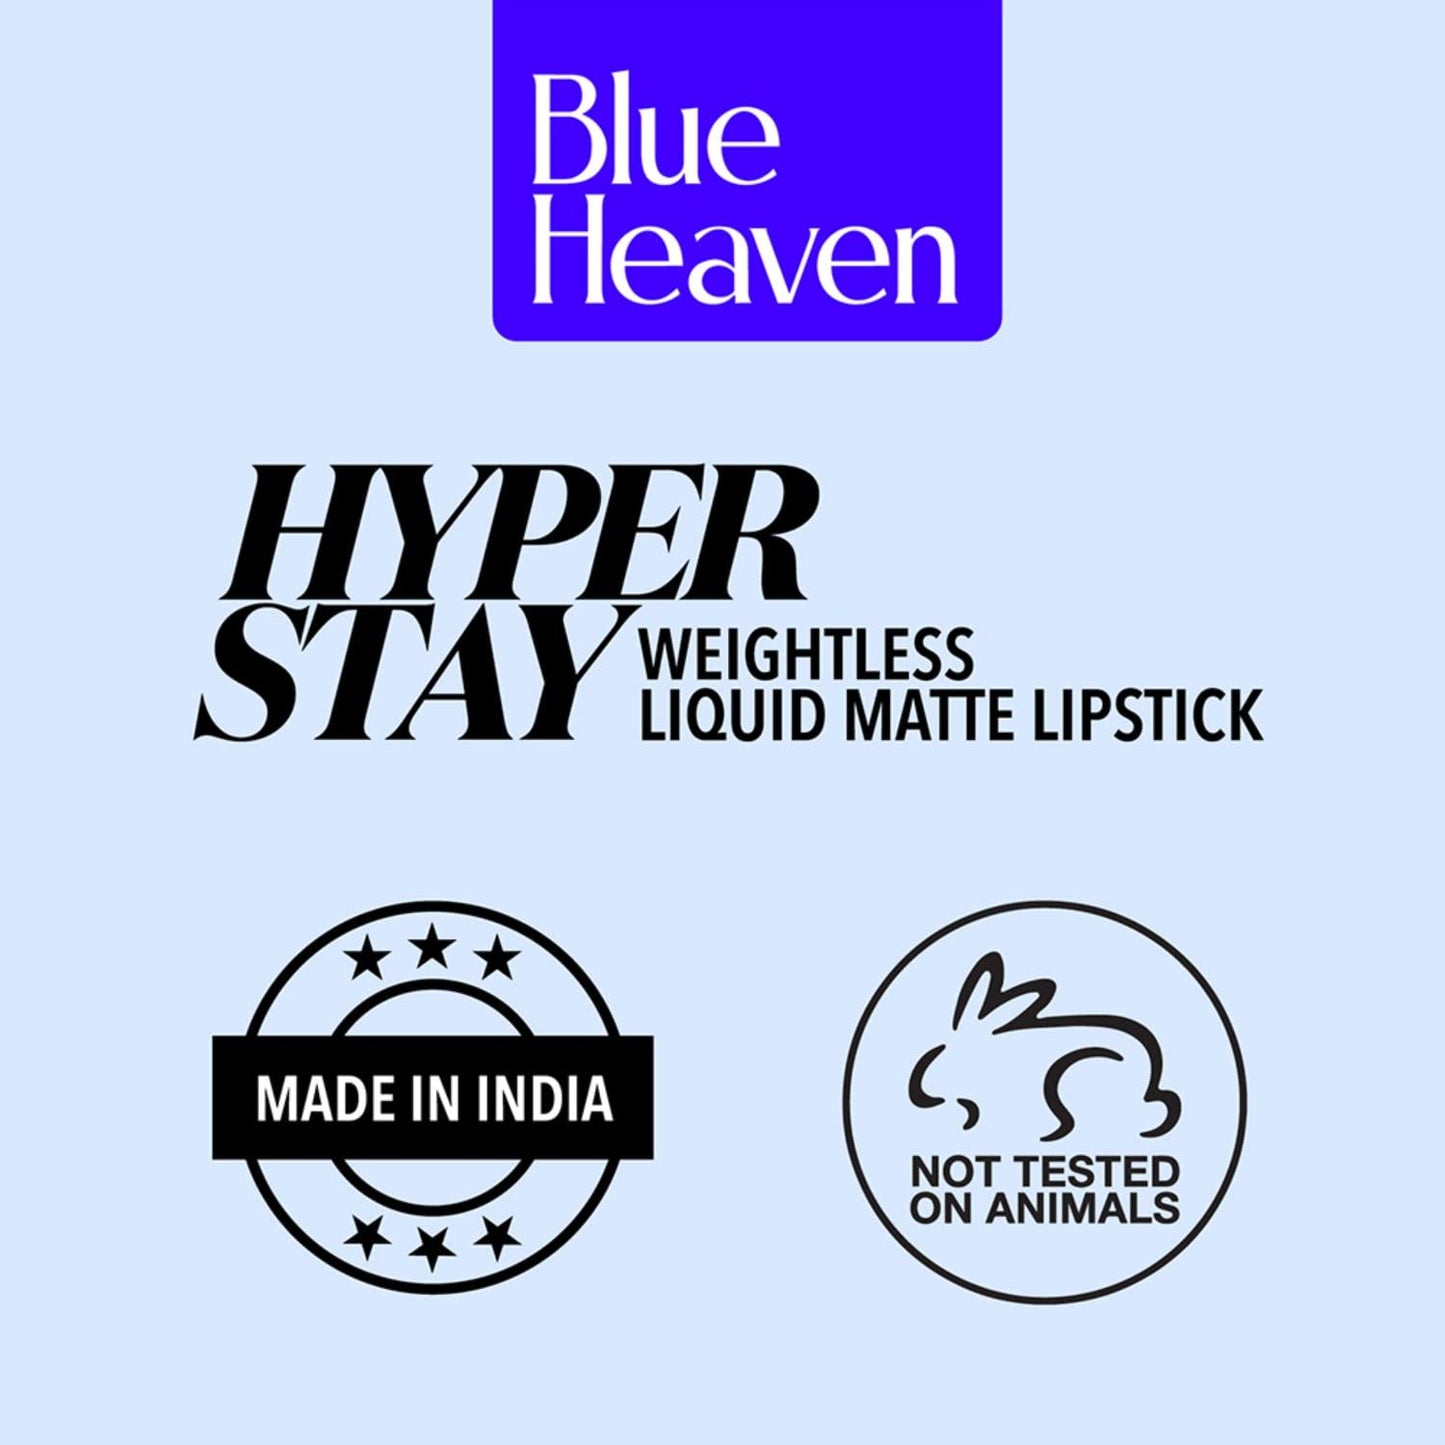 Blue Heaven Hyperstay Weightless Liquid Matte Lipstick, Smudgeproof, Transfer proof, Flirty Pink, 6ml